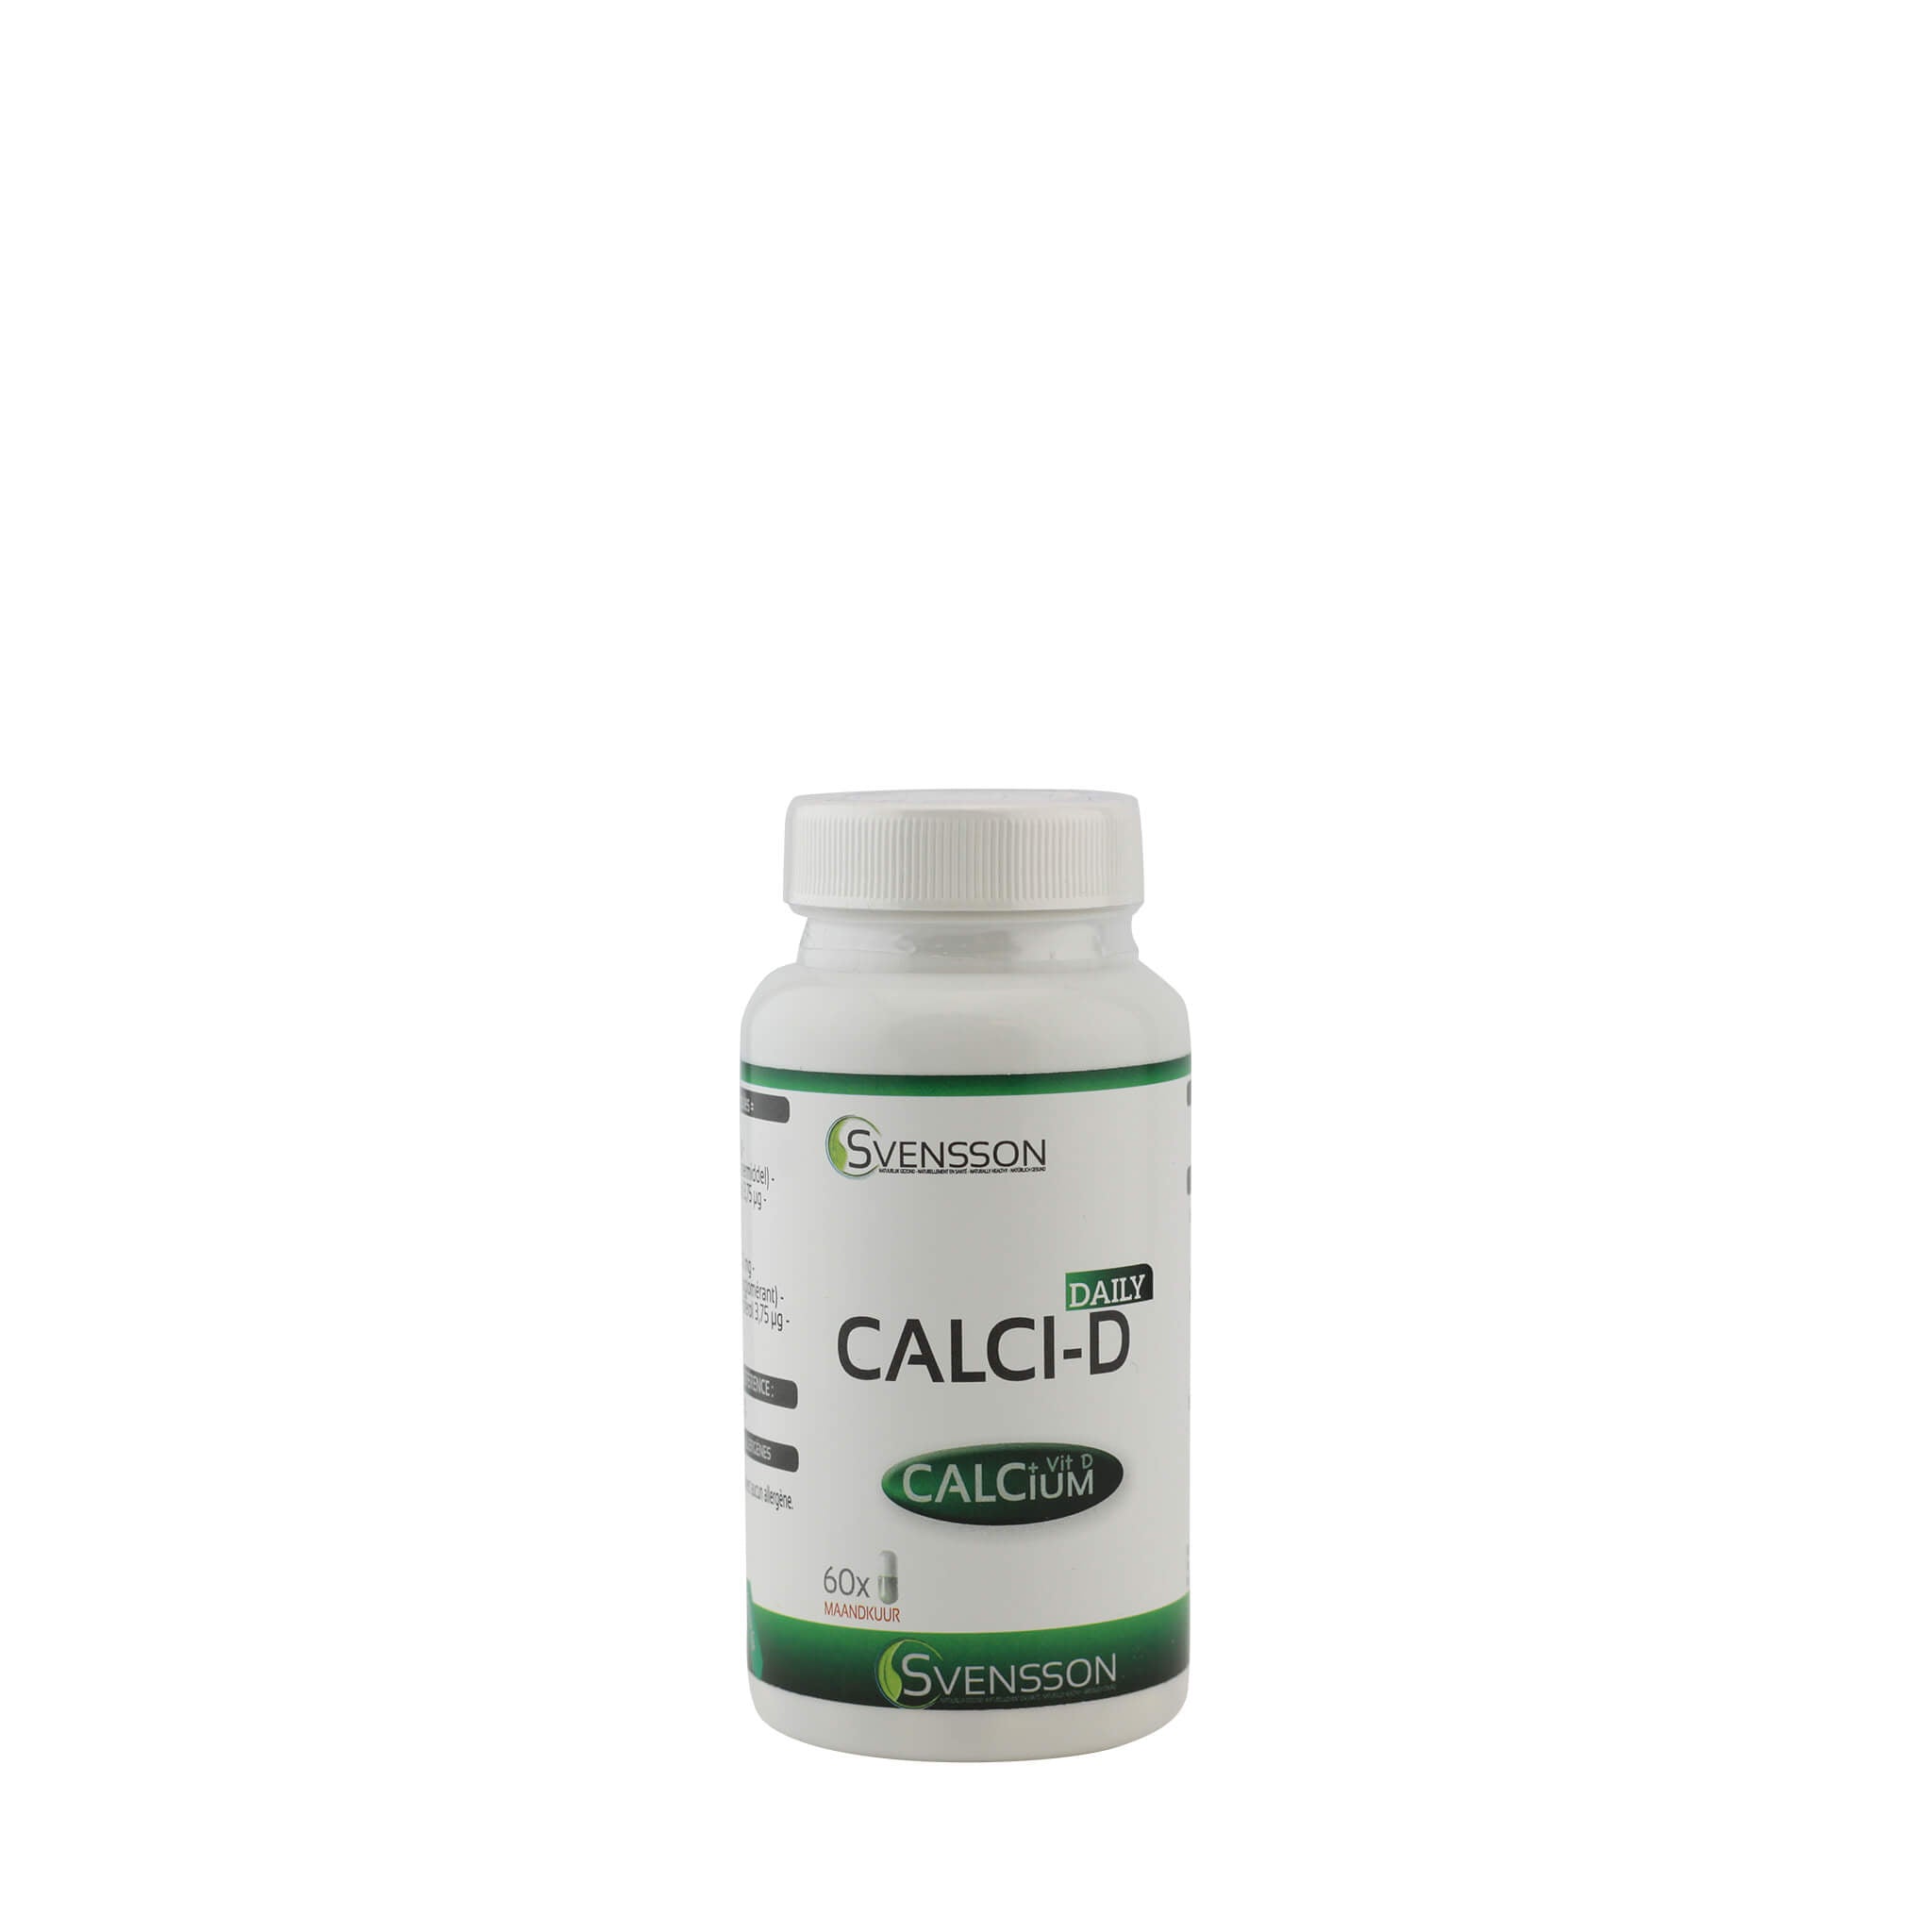 Calci D - Calcium - Svensson